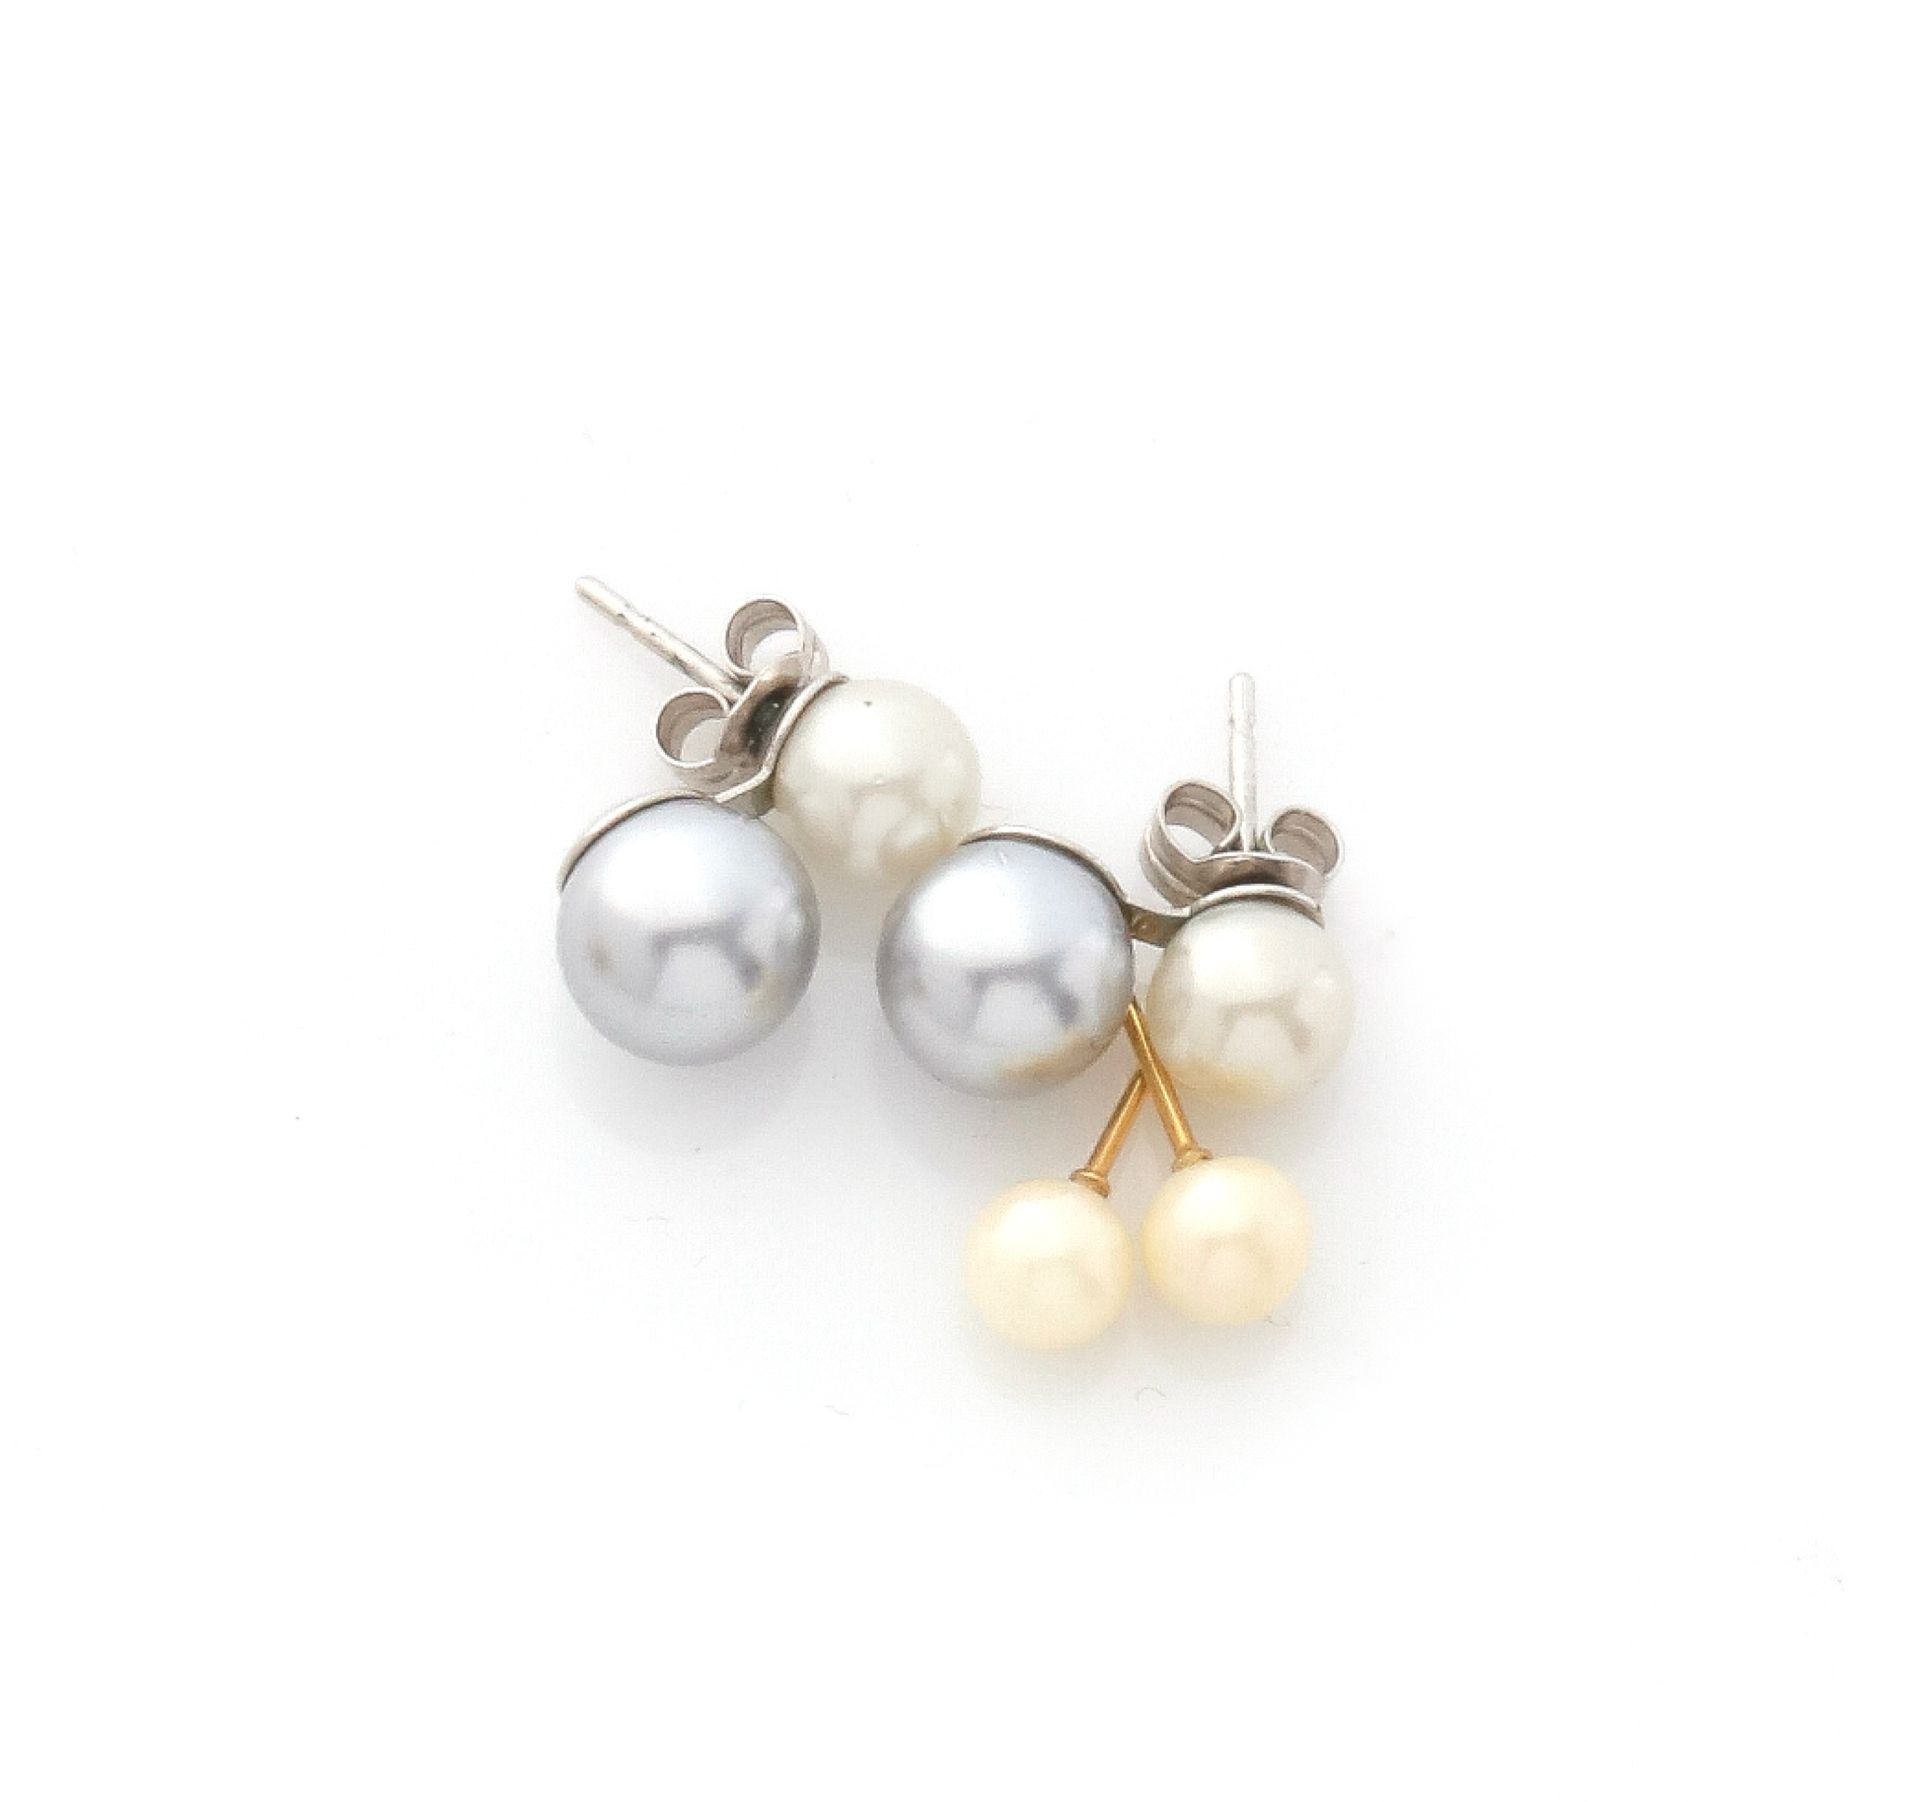 Null 一套两对耳环，耳柄和扣子由金属和白色及灰色合成珍珠制成。

(缺扣子)